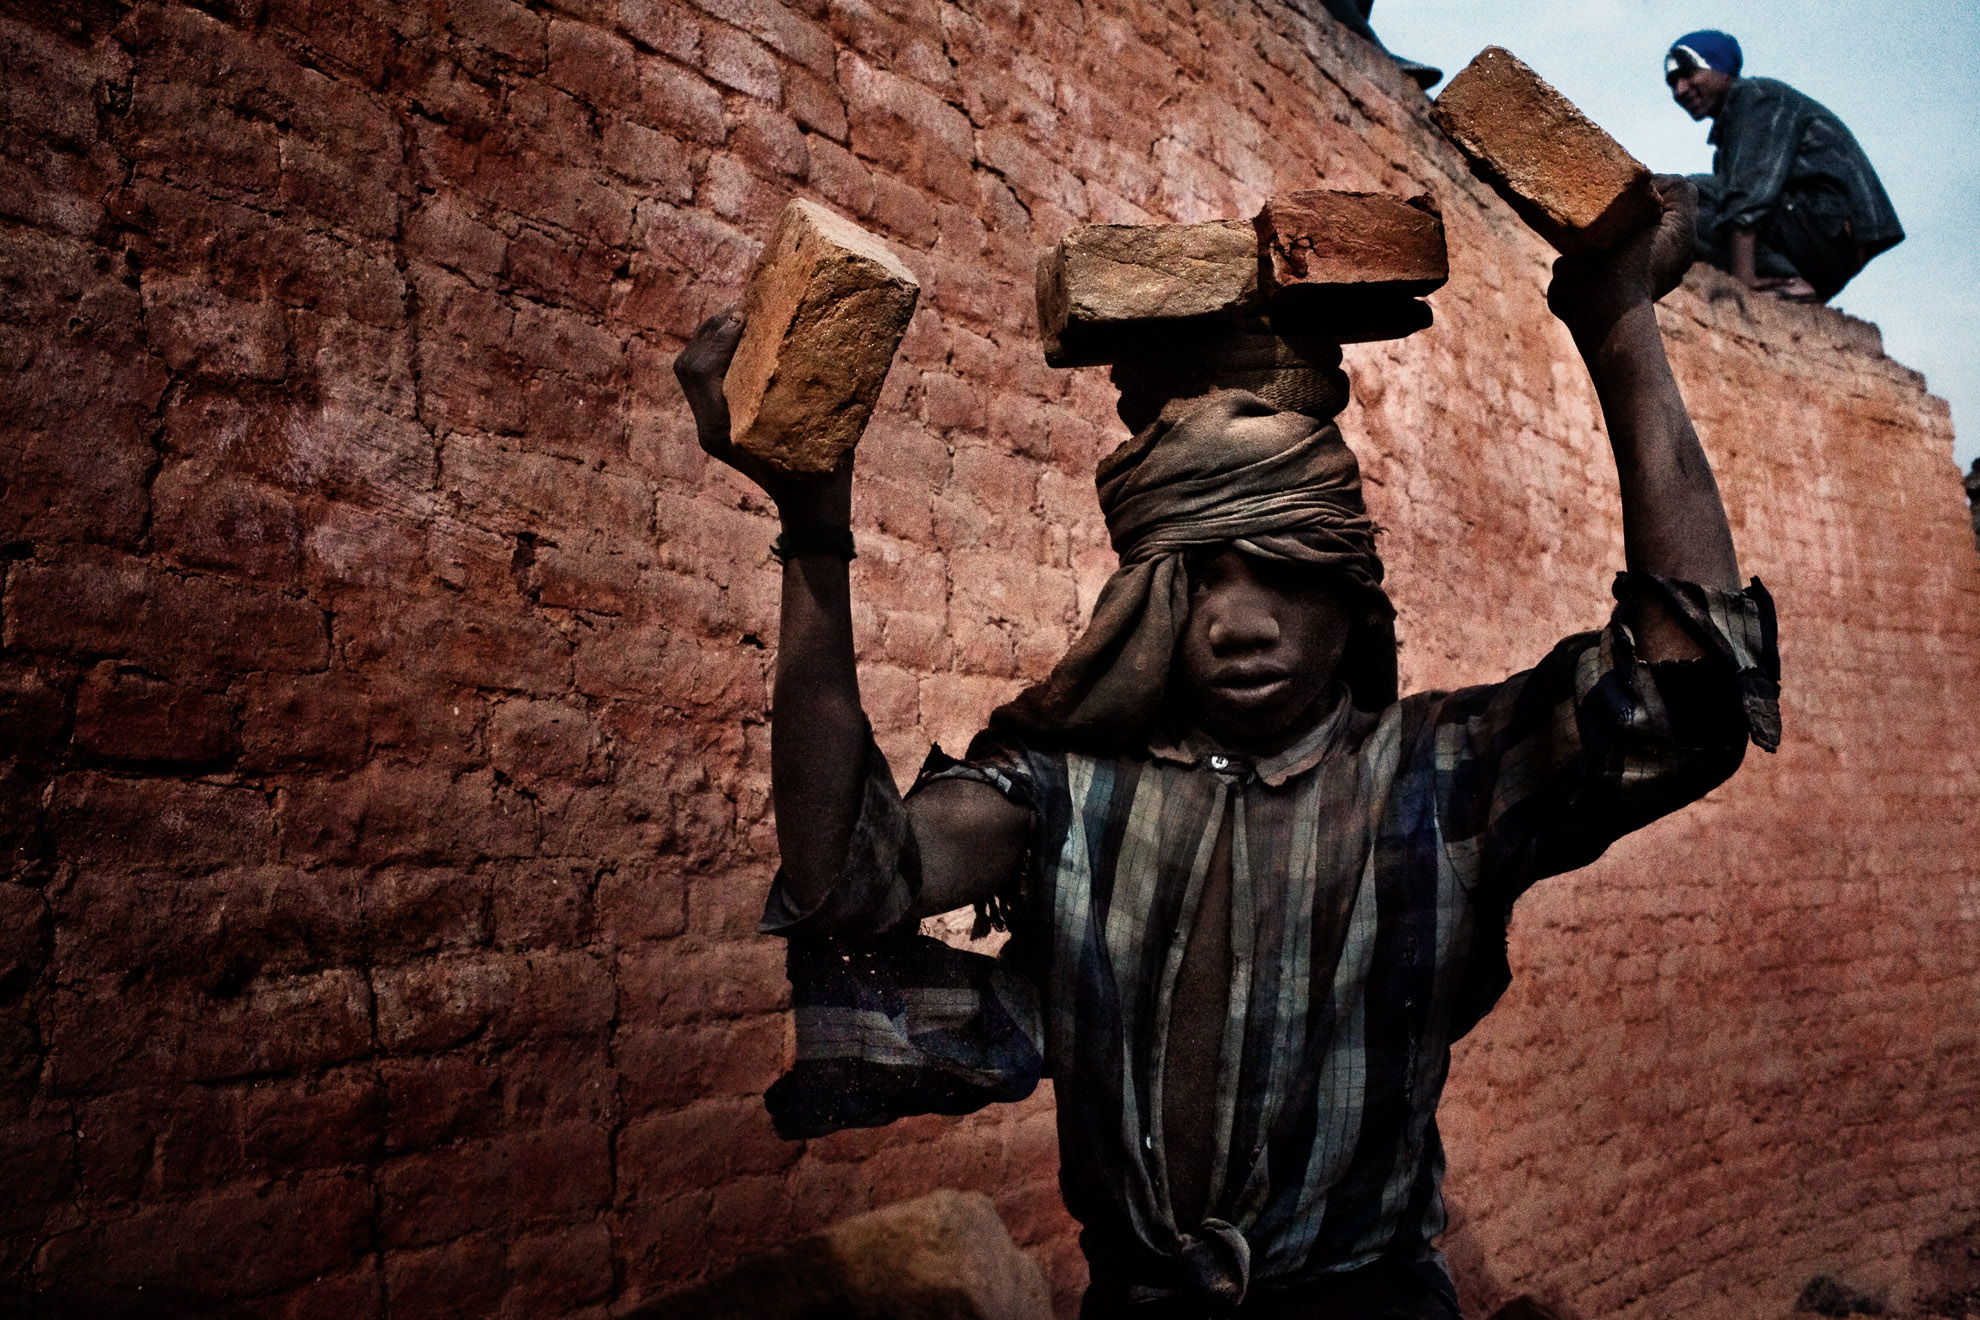 Se calcula que 60.000 menores trabajan en hornos de cocción de ladrillos en Nepal. Se trata de trabajos a corto plazo, desarrollados en condiciones muy peligrosas, con jornadas laborales de doce horas al día. La paga diaria varía en función del número de ladrillos producidos y se sitúa en torno a 1 USD por cada mil ladrillos transportados.